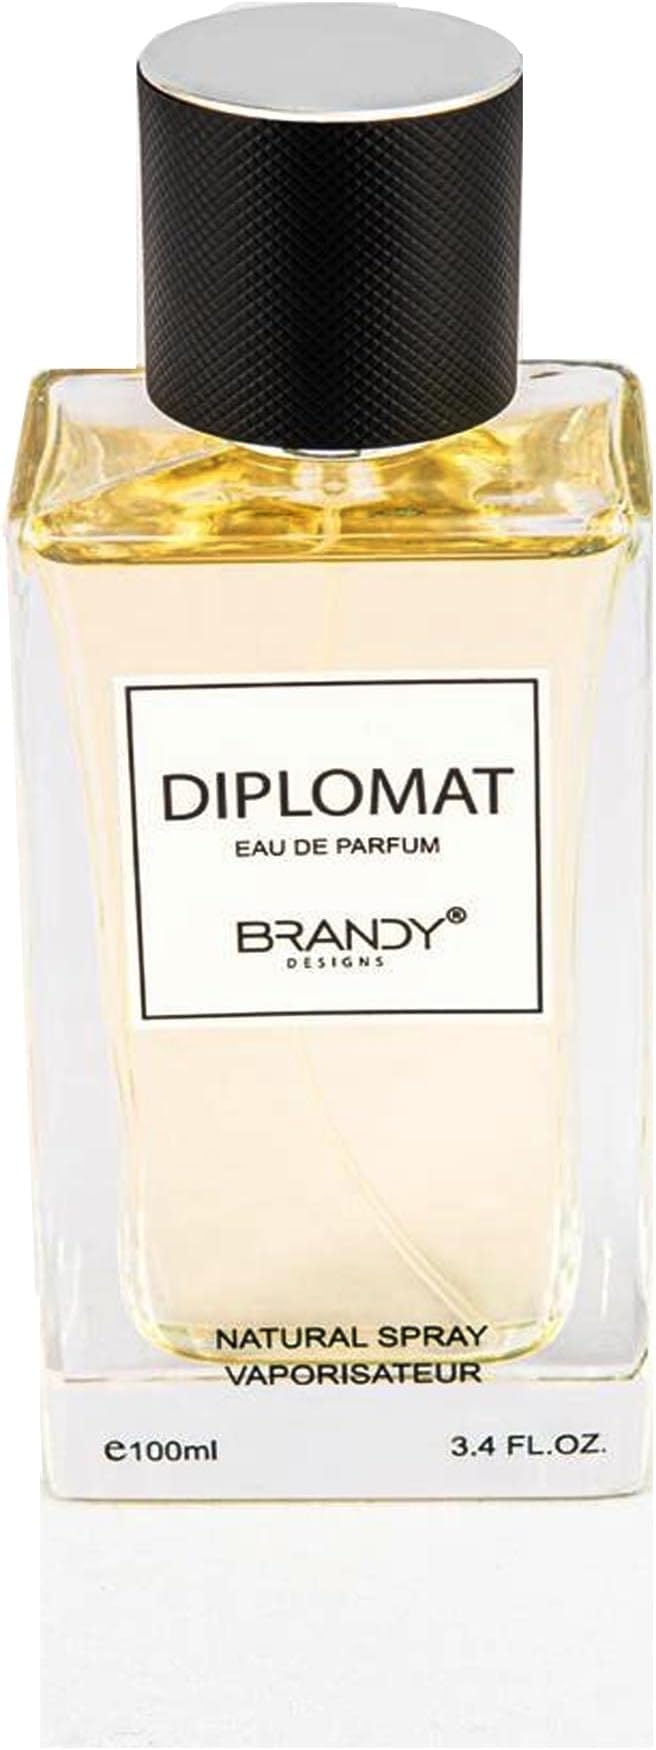 BRANDY DESIGNS DIPLOMAT Eau de Parfum for Men 100ml